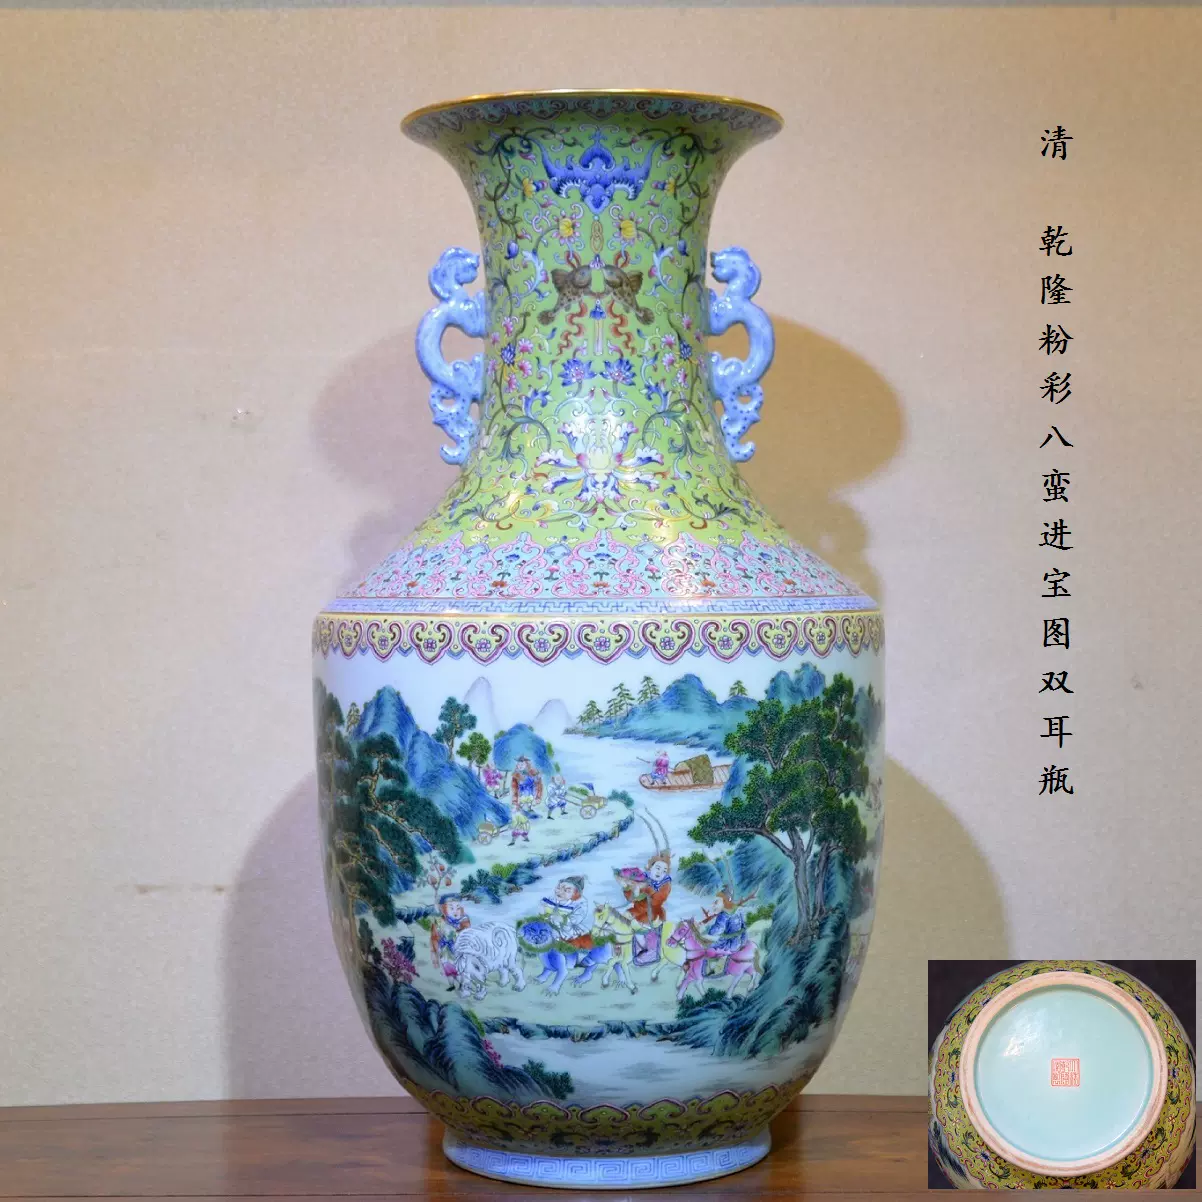 清乾隆粉彩洋彩山水图瓶古董古玩收藏艺术品清代官窑瓷器文房把玩-Taobao